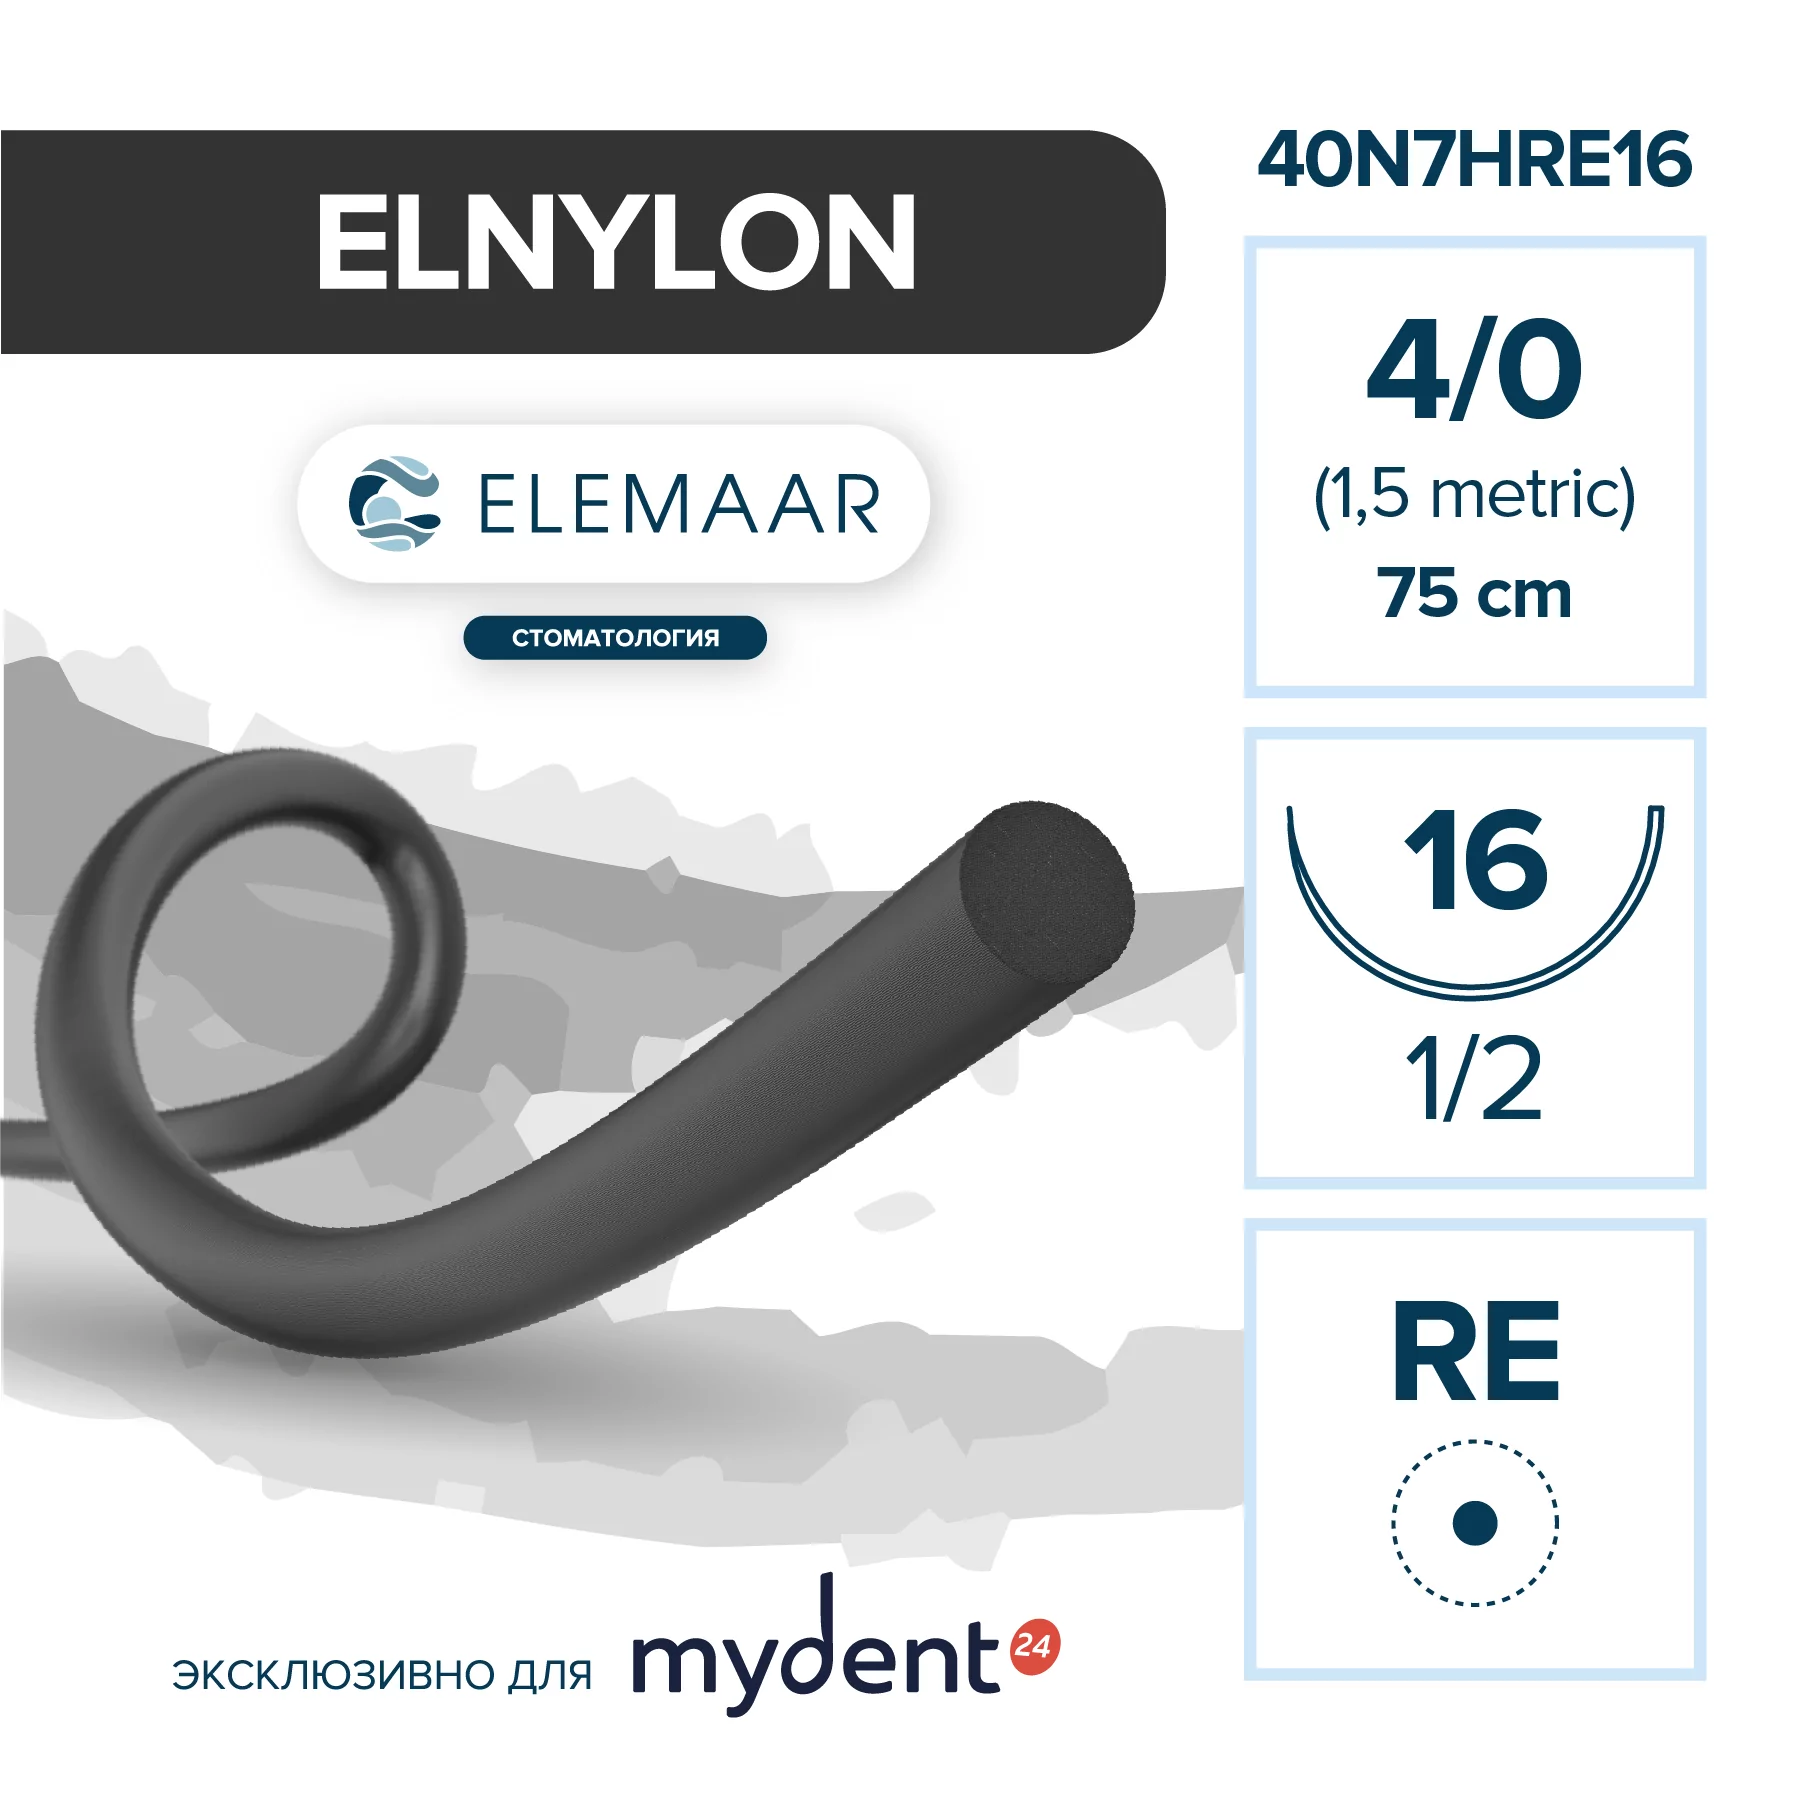 Шовный материал ELNYLON 4/0 (12 шт, 75 см, 1/2, 13 мм, колющая игла с квадратным телом)